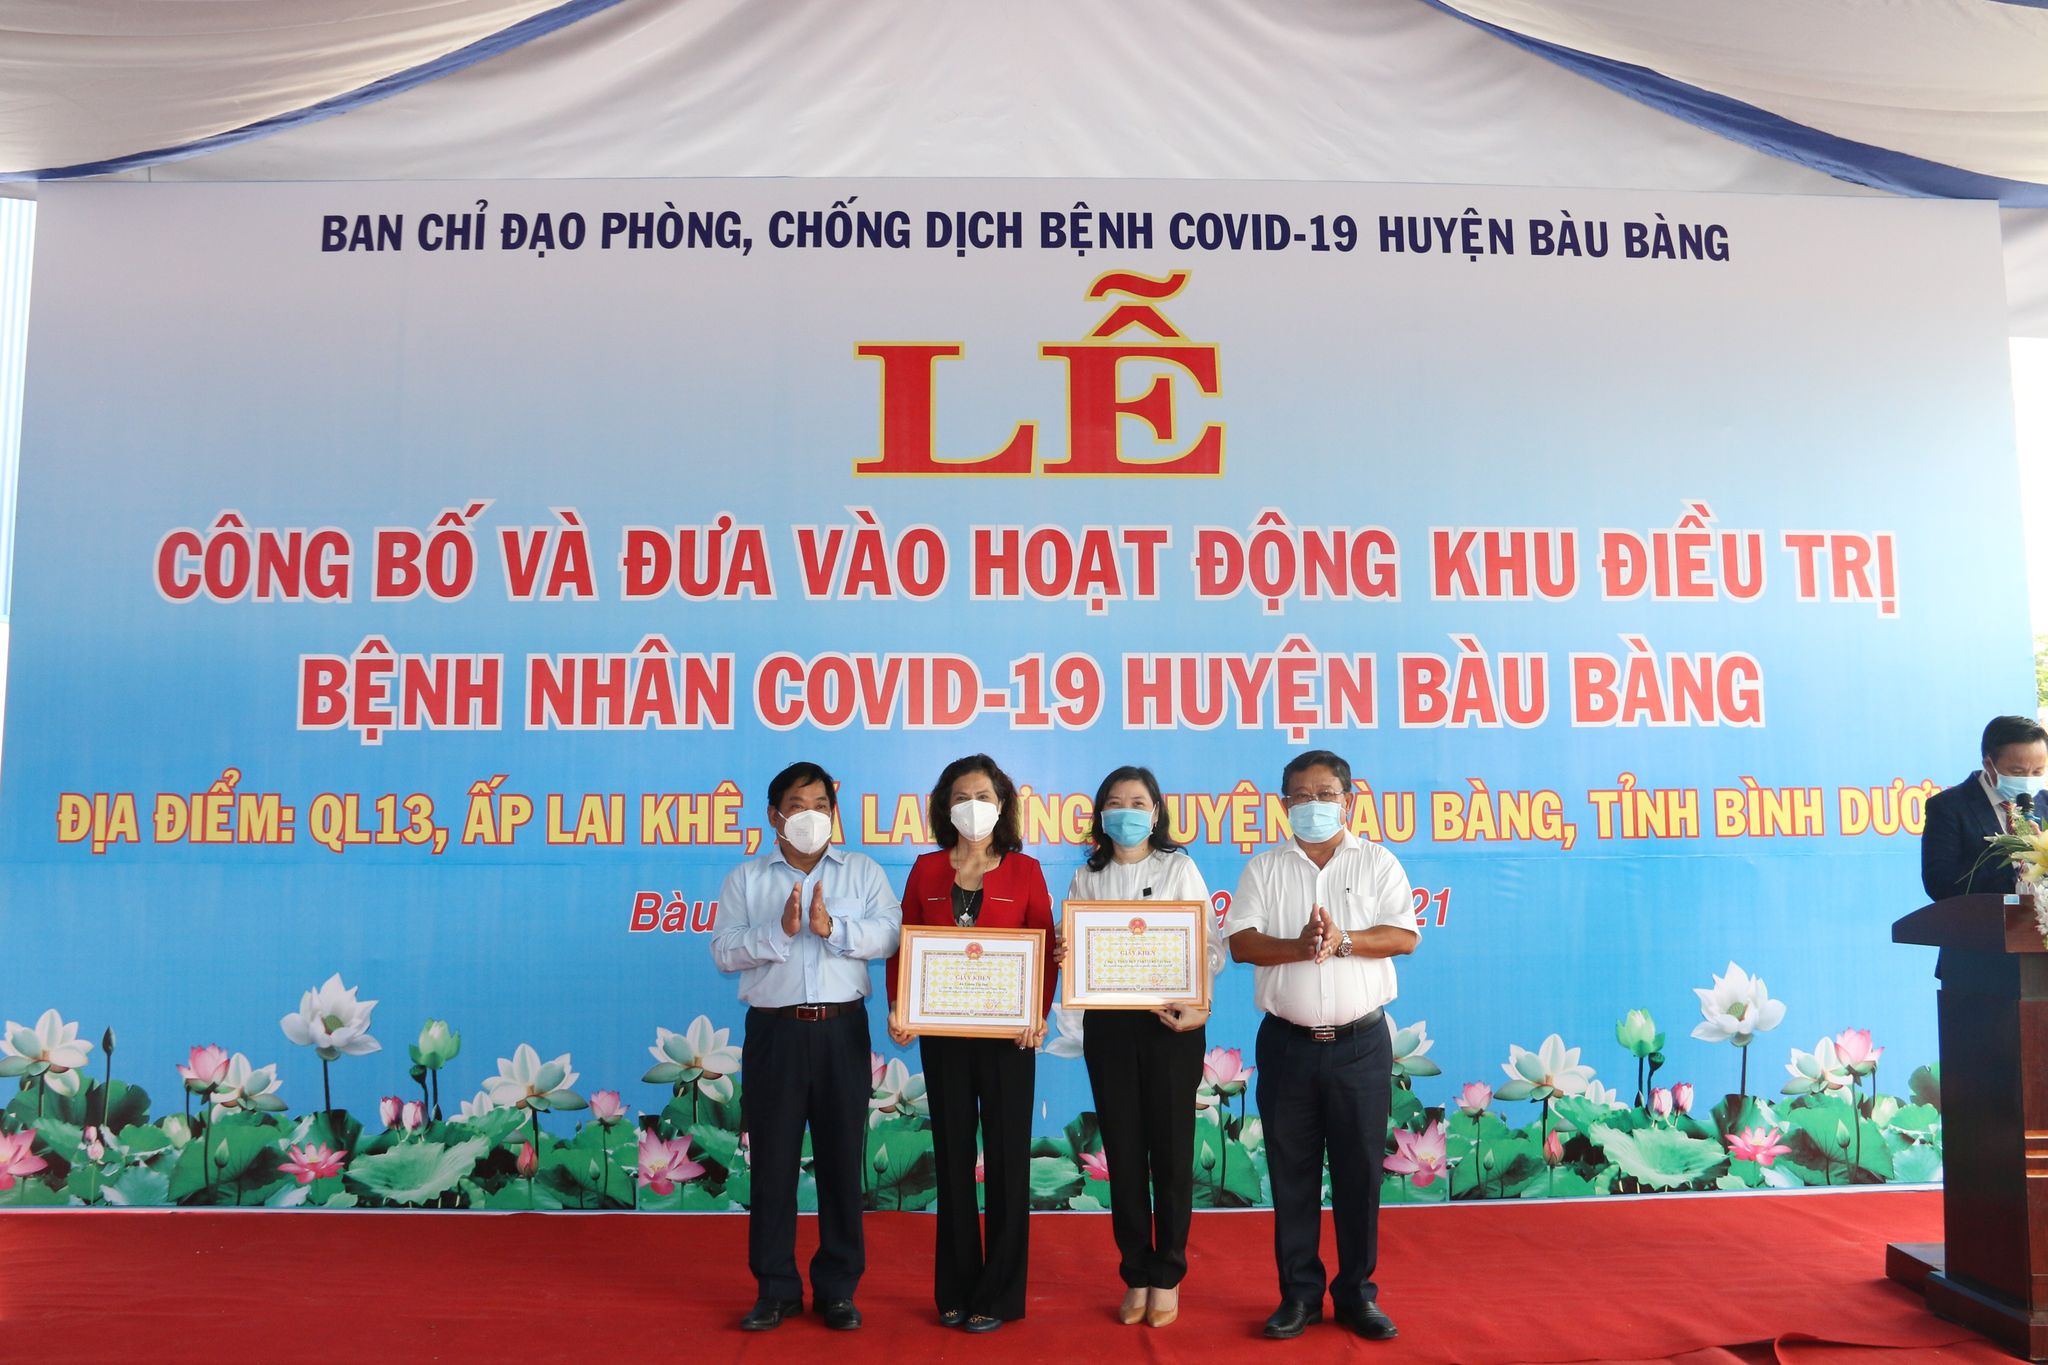 Ban Chỉ đạo phòng, chống dịch bệnh Covid-19 huyện trao tặng giấy khen cho công ty TNHH Phong Thạnh đã có đóng góp vào công tác phòng chống Covid-19 của huyện. Ảnh Hoàng Tú